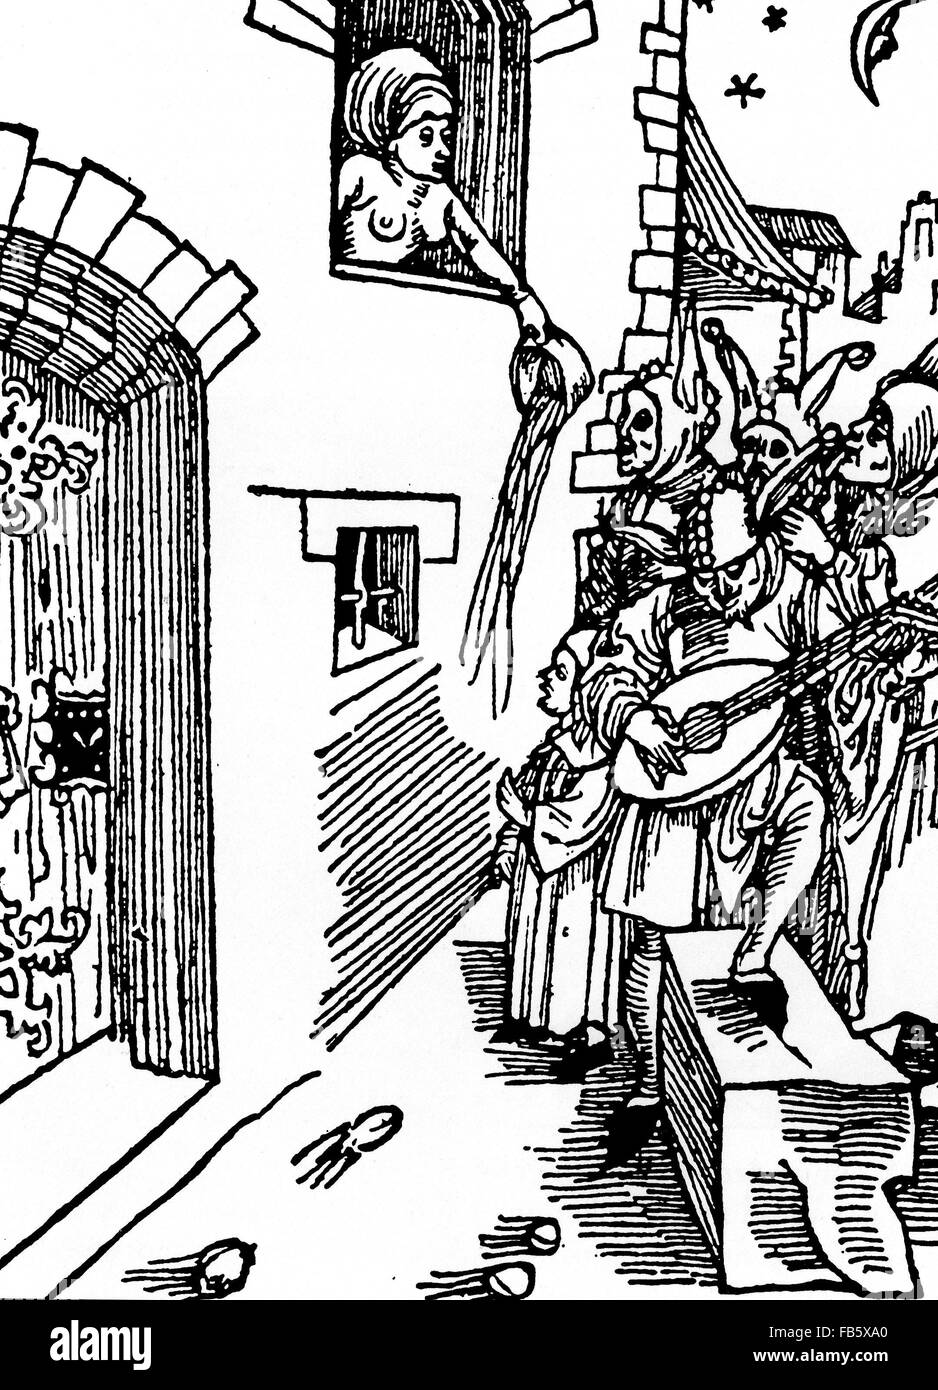 Sanità pubblica la xilografia tedesca circa 1450 mostra una donna lo svuotamento della camera di lei pentola su un gruppo di musicisti di strada durante la notte. Foto Stock